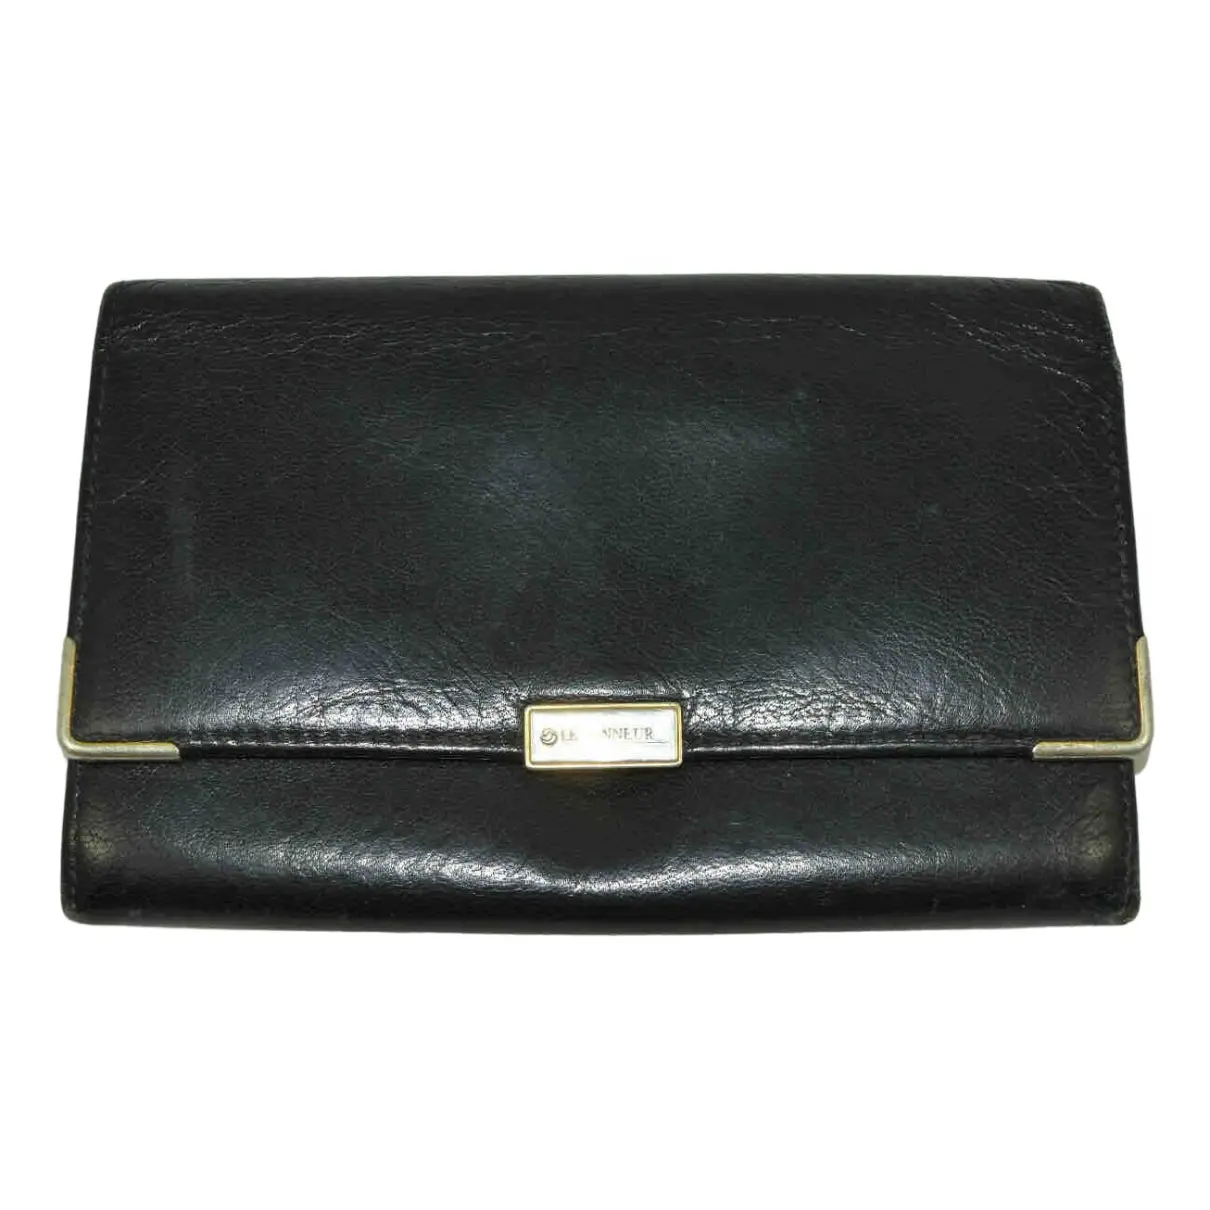 Leather wallet Le Tanneur - Vintage